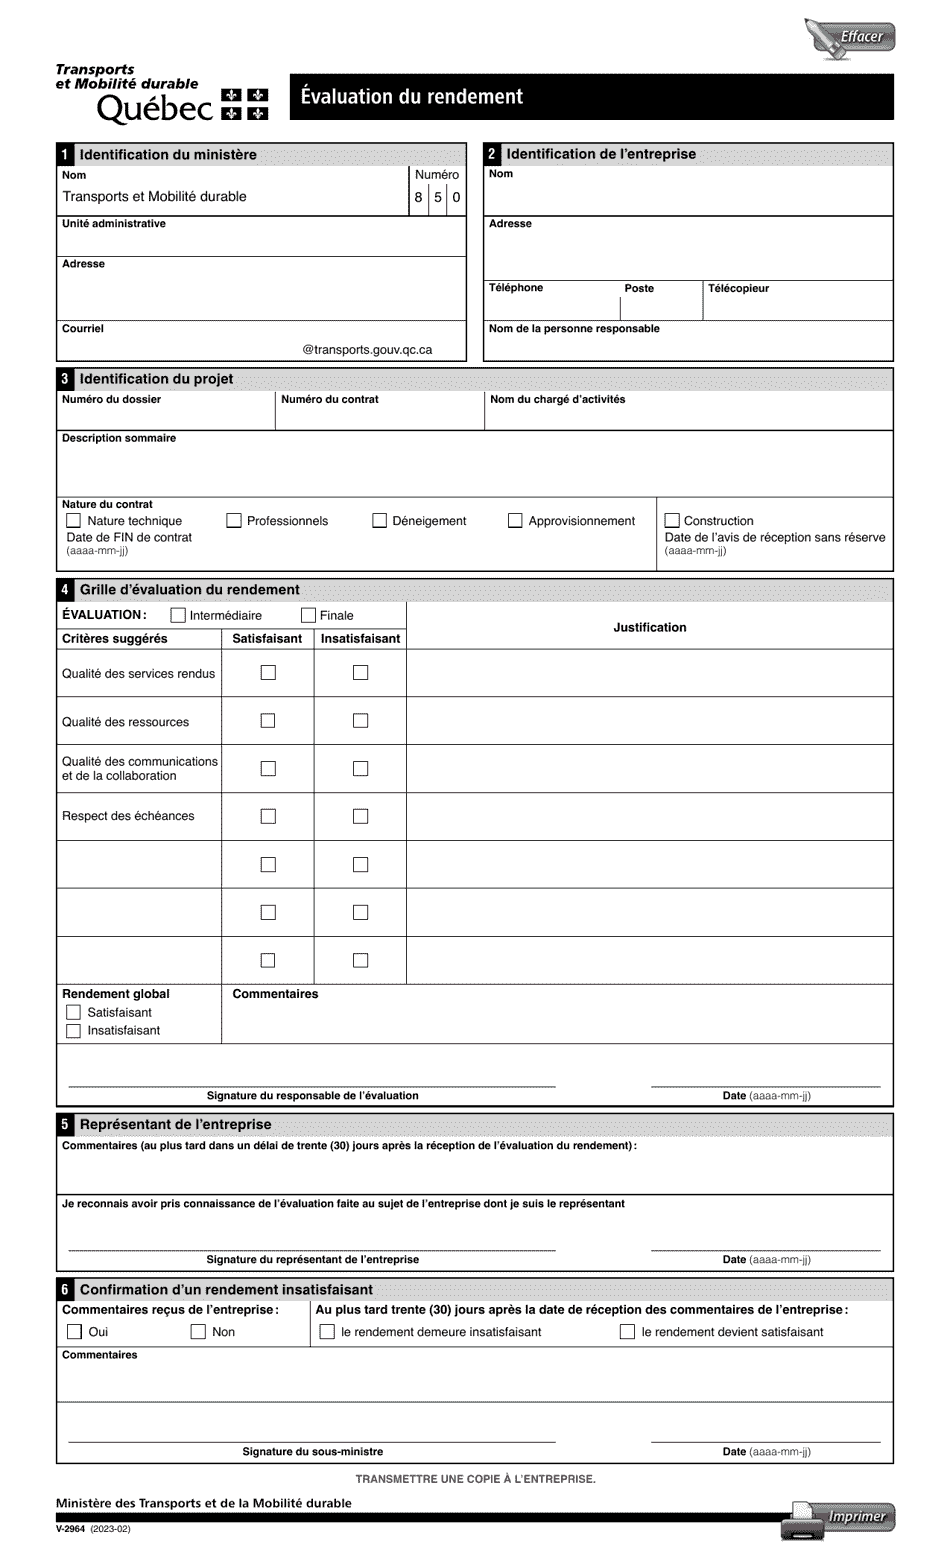 Forme V-2964 Evaluation Du Rendement - Quebec, Canada (French), Page 1